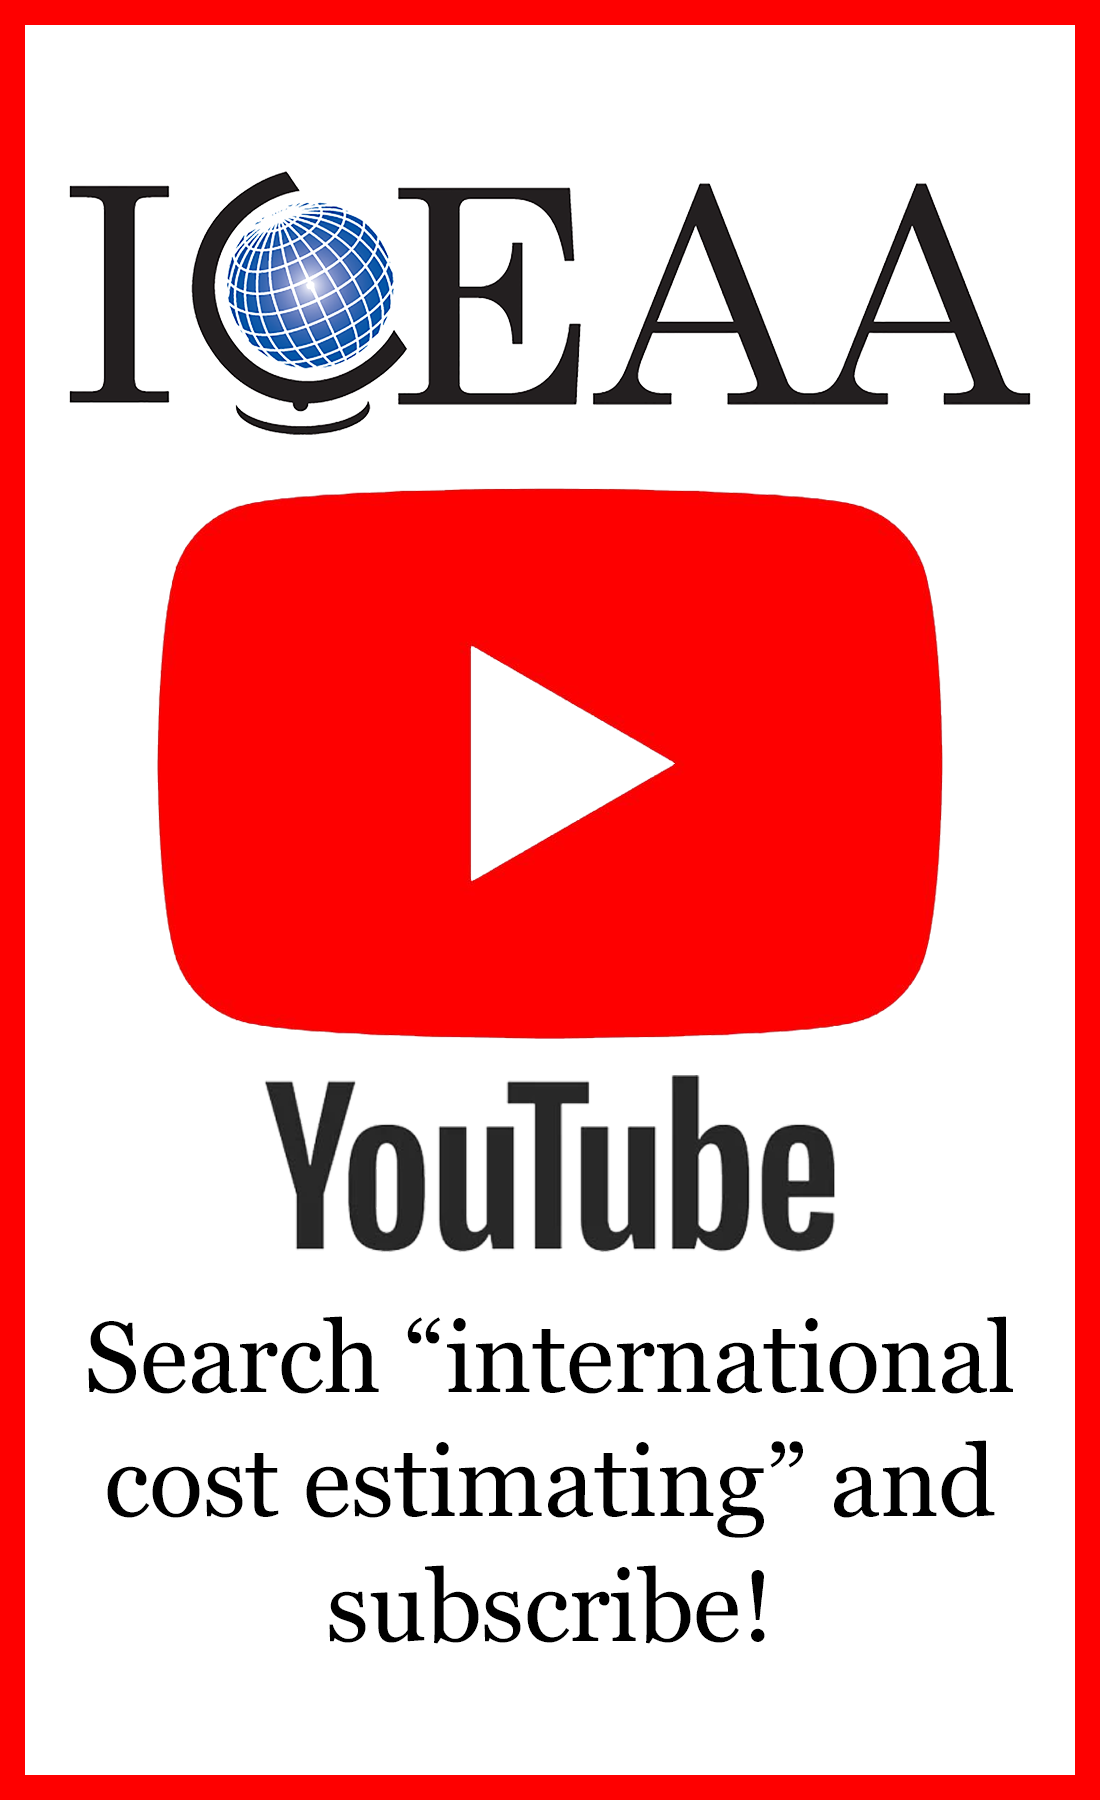 ICEAA YouTube